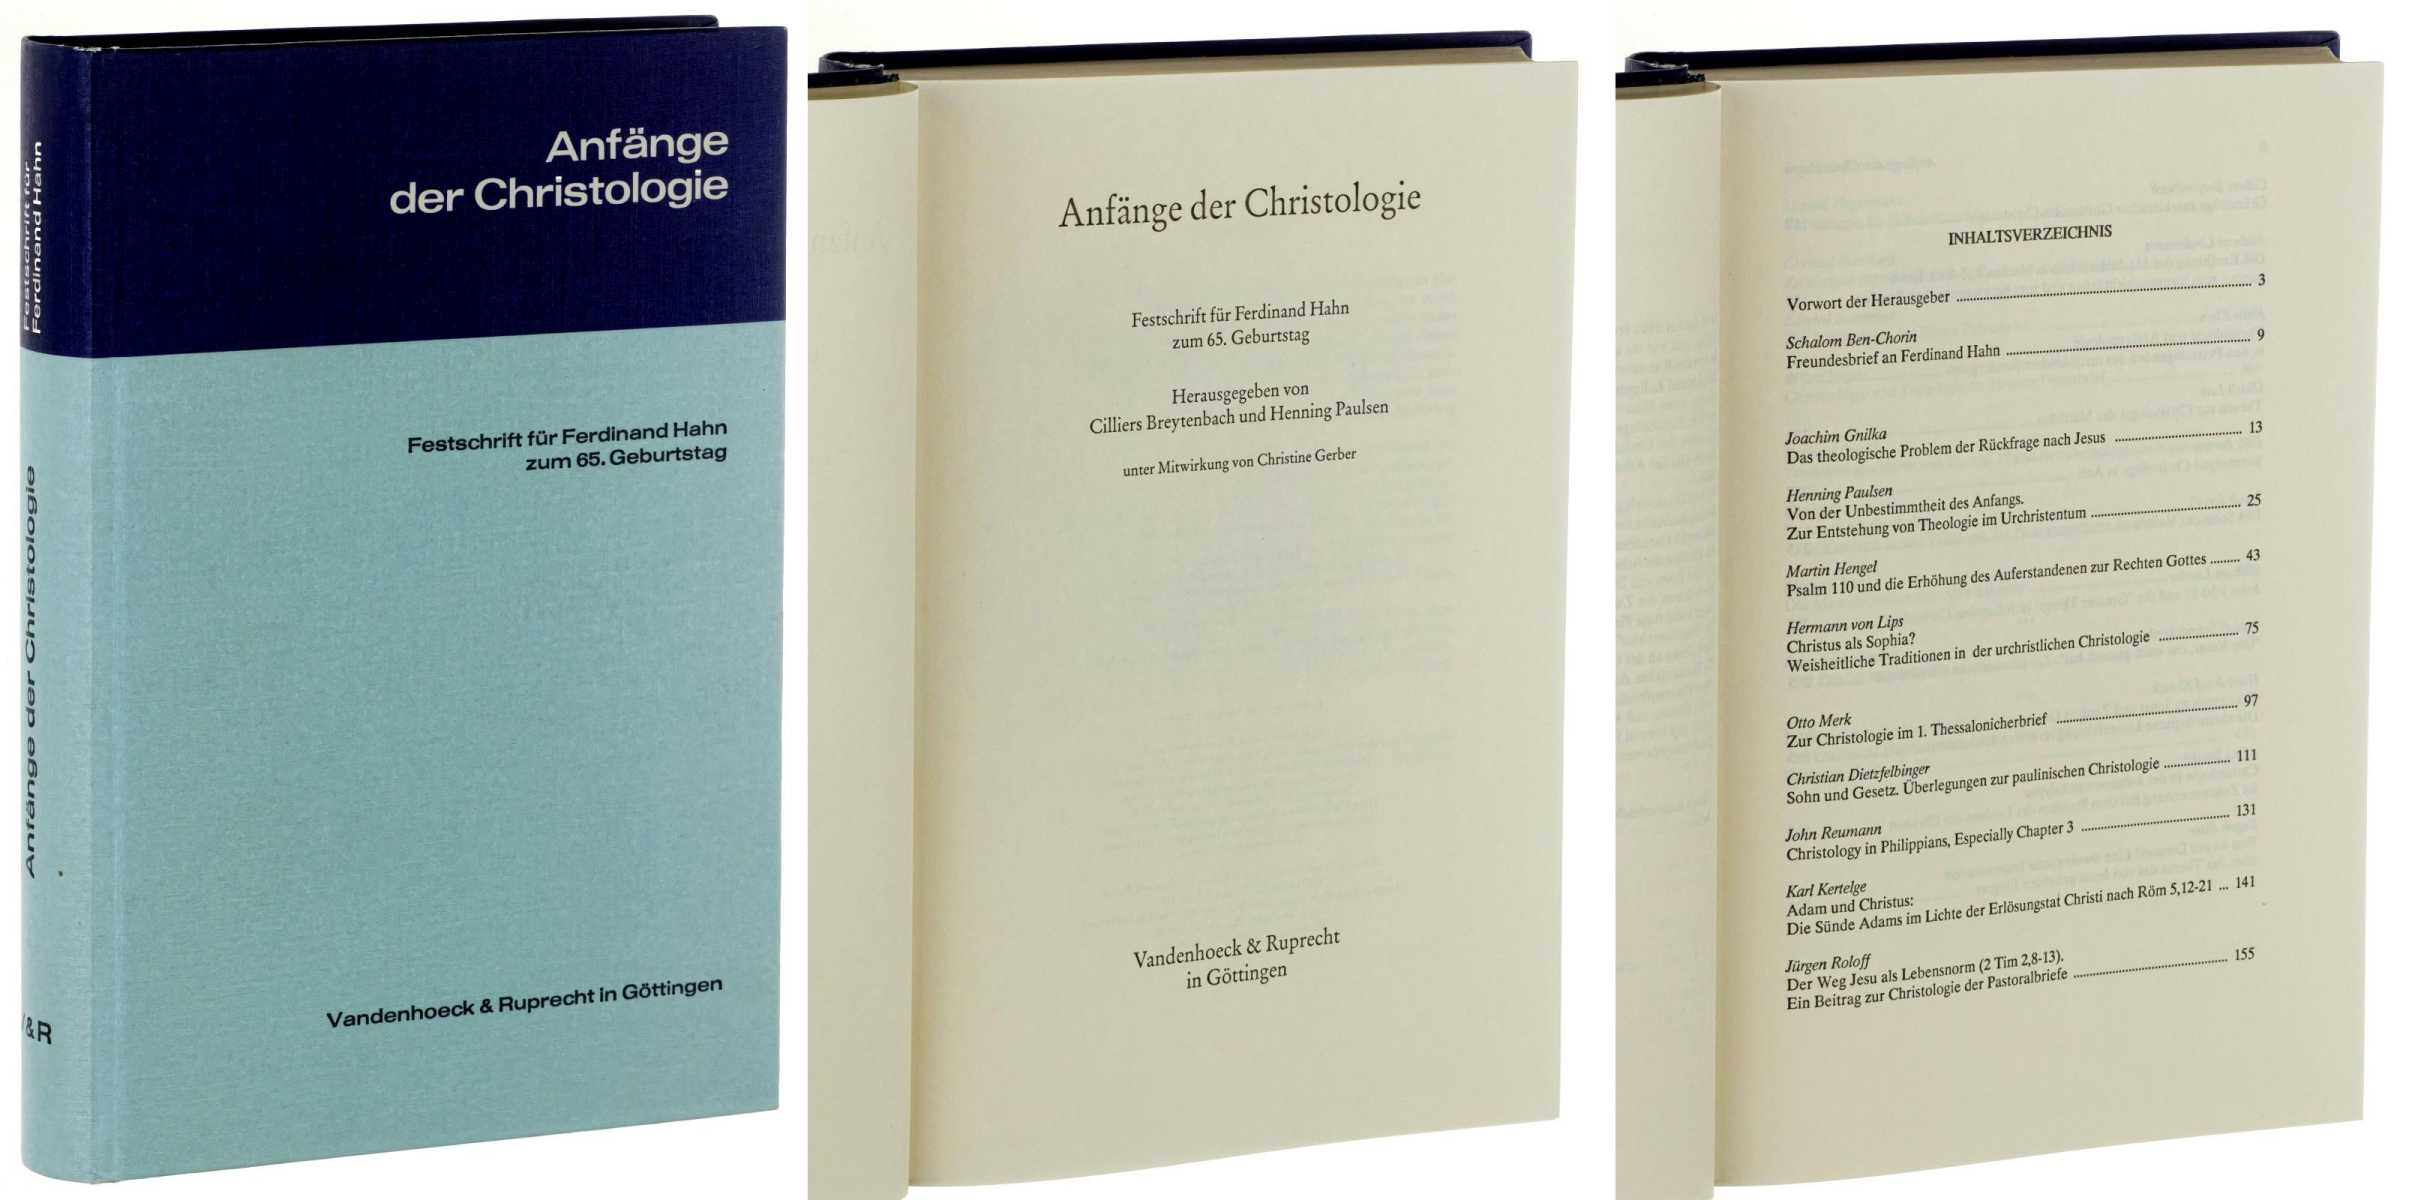   Anfänge der Christologie. Festschrift für Ferdinand Hahn zum 65. Geburtstag. 